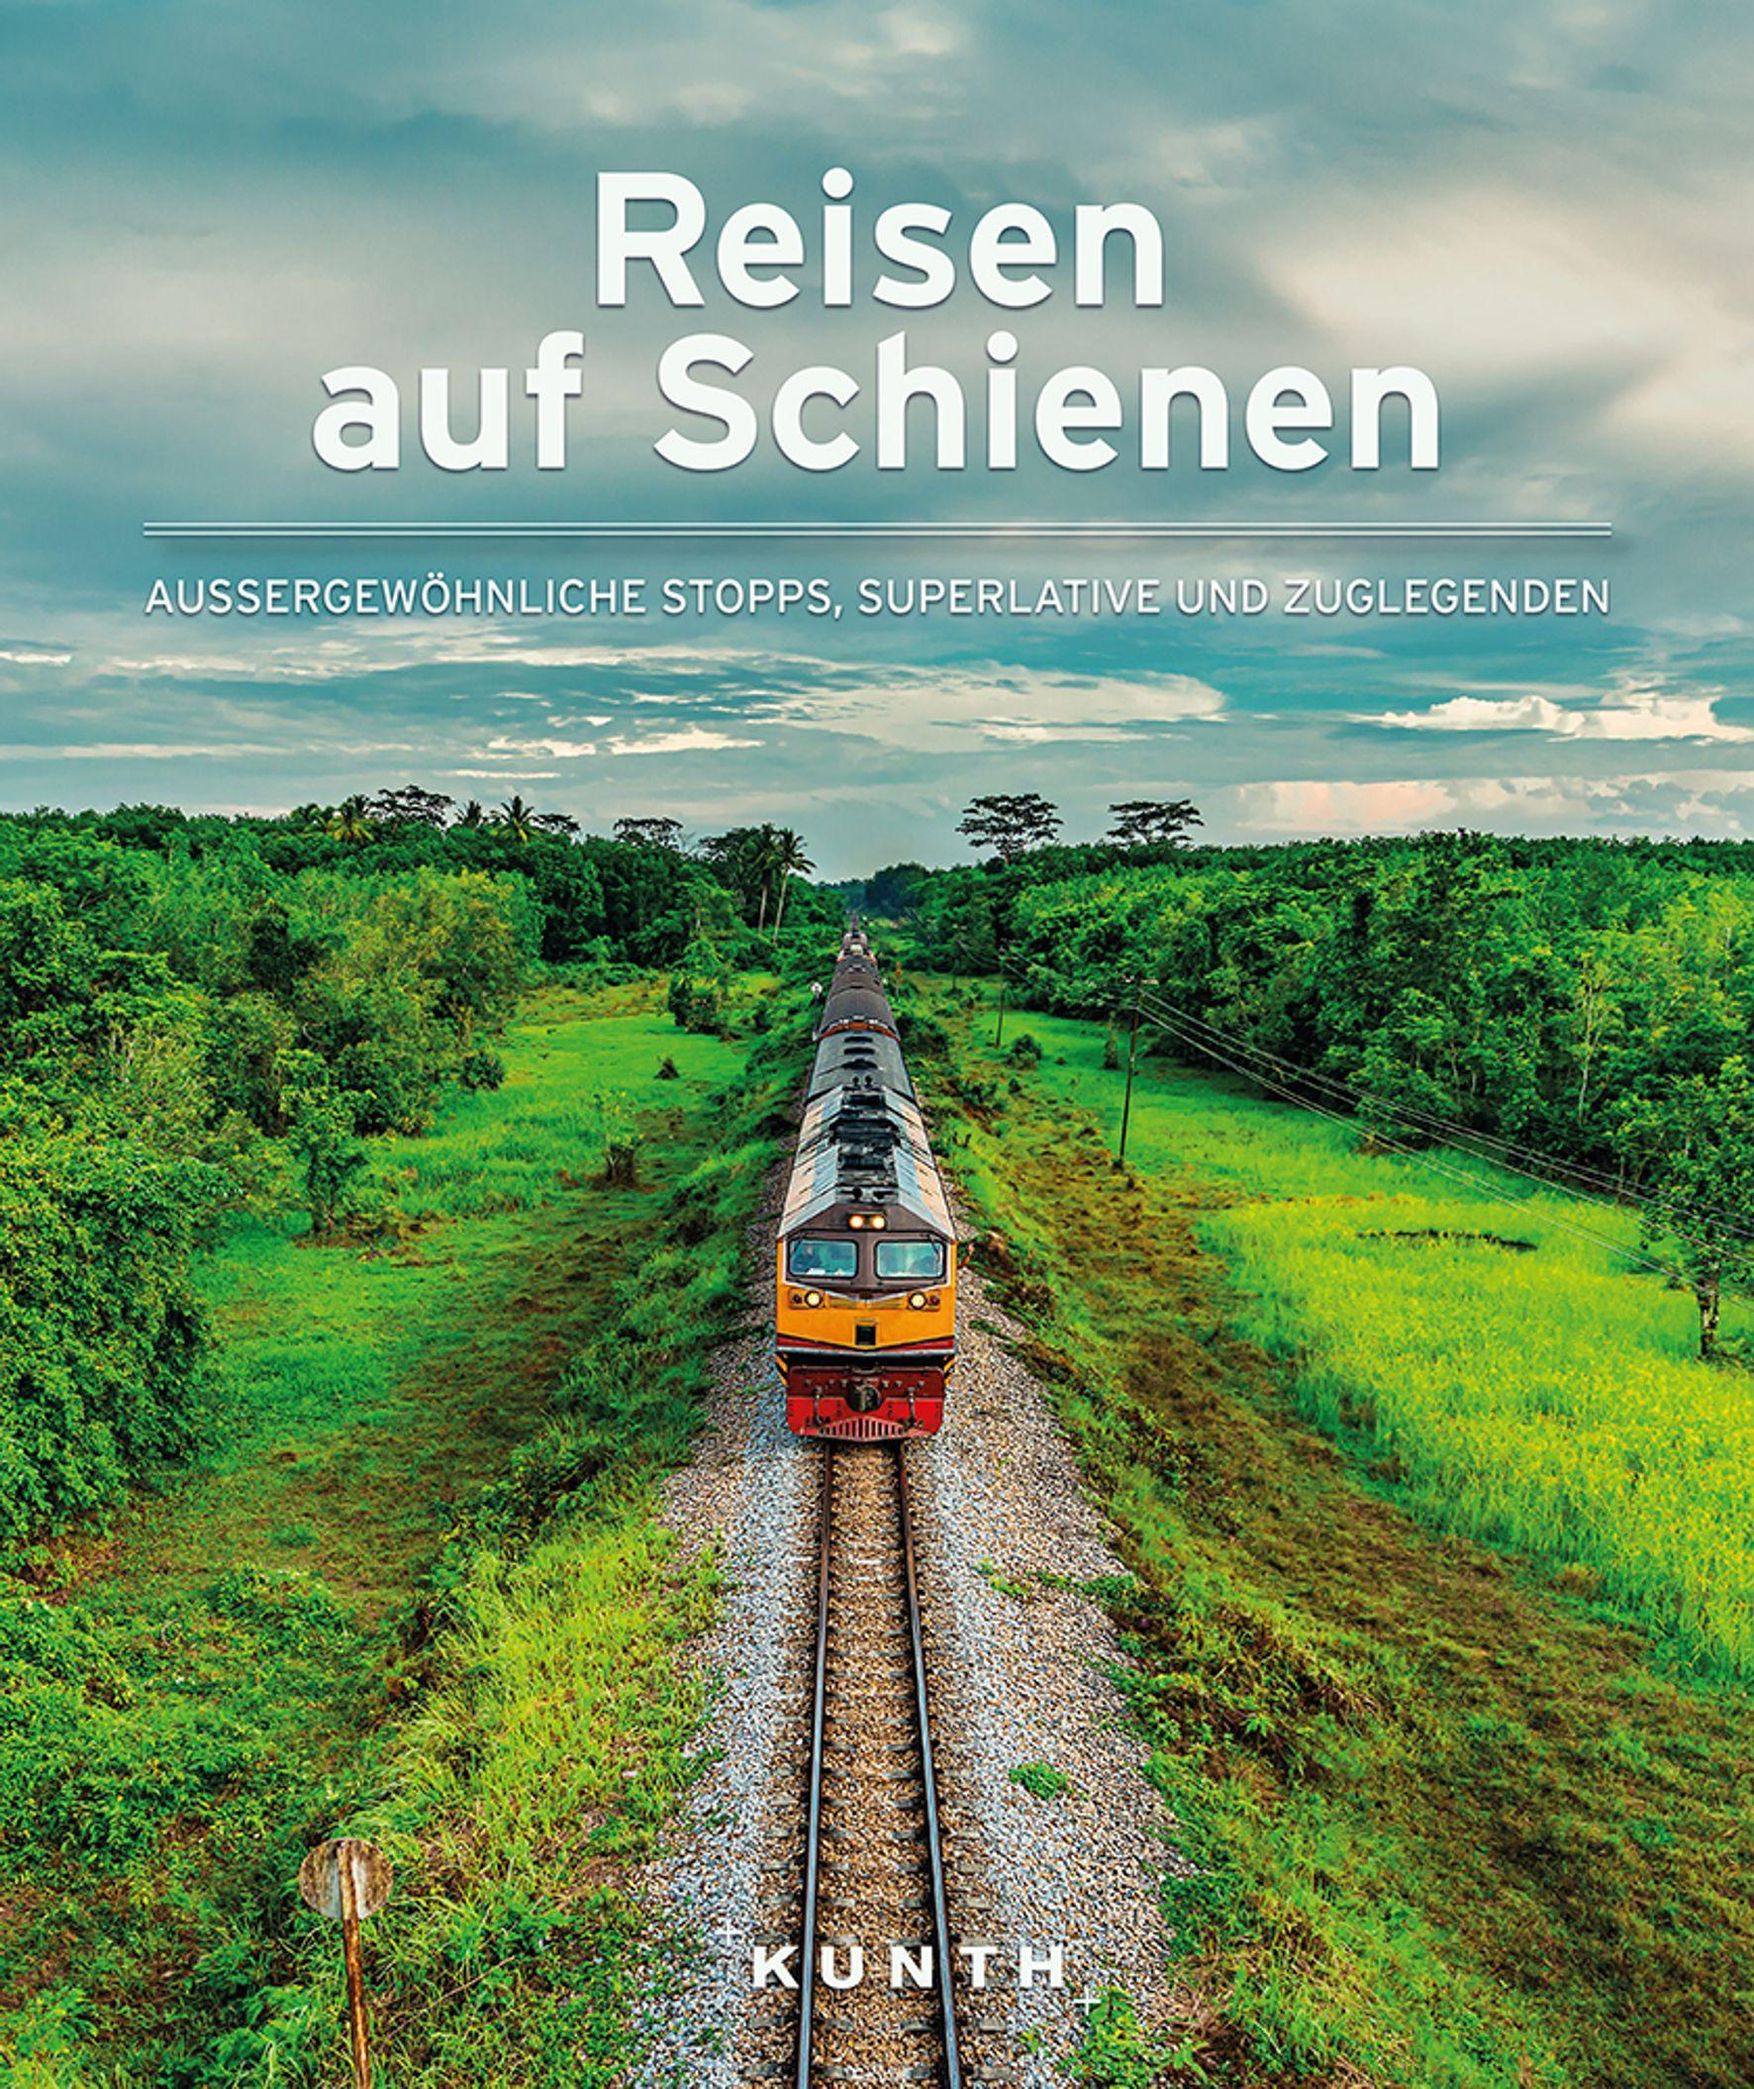 Reisen auf Schienen Buch von Friedrich Köthe versandkostenfrei bestellen